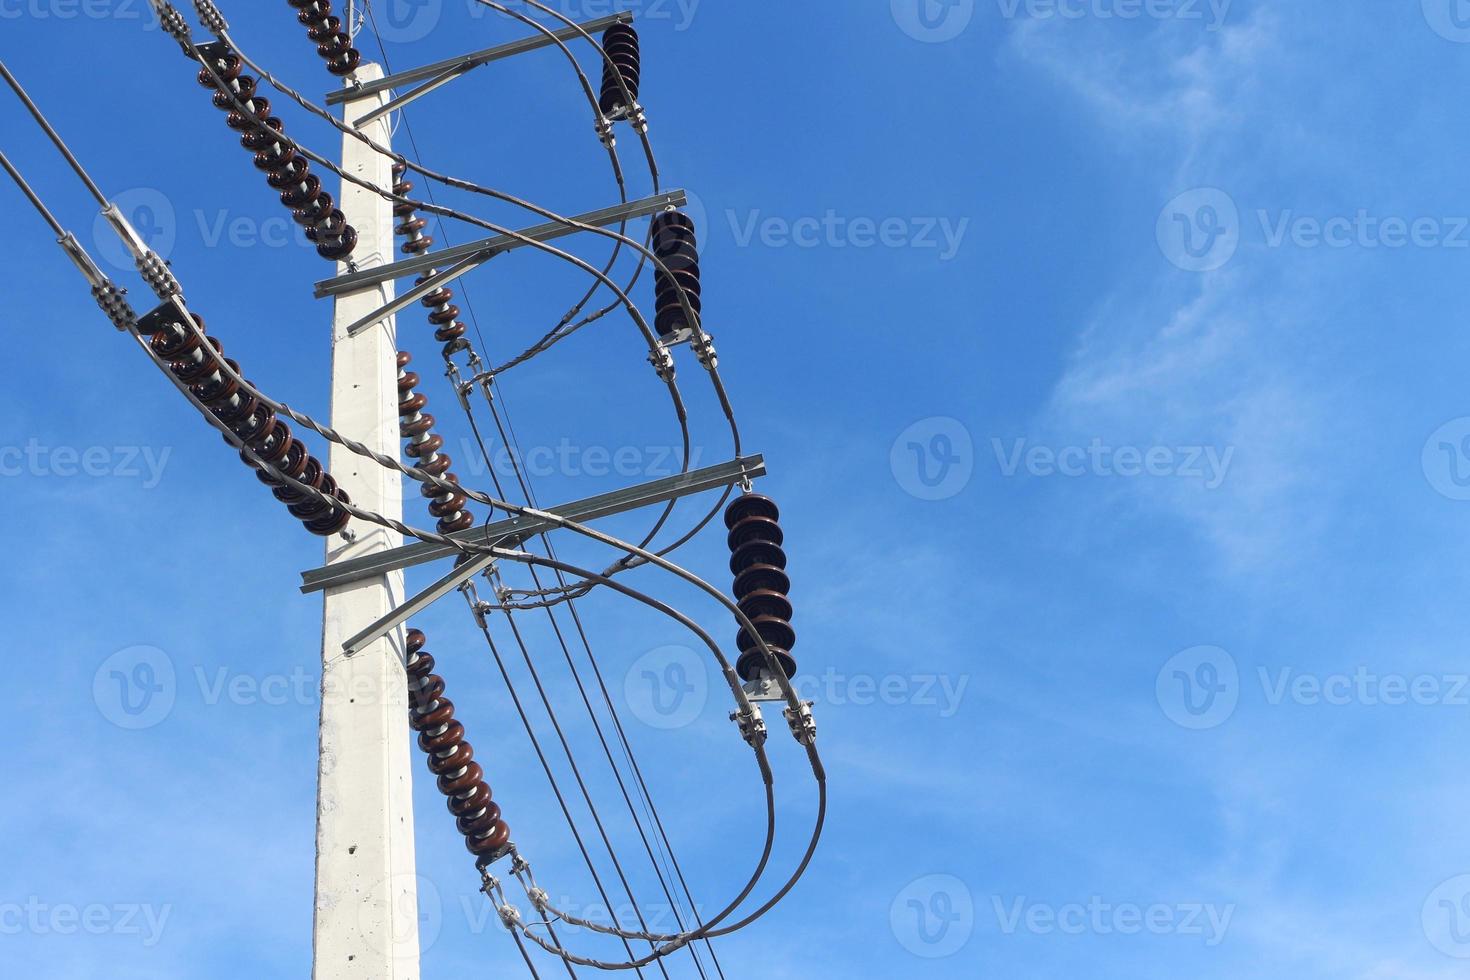 högspänning elektrisk isolator hängande på elstolpe med blå himmel bakgrund. foto